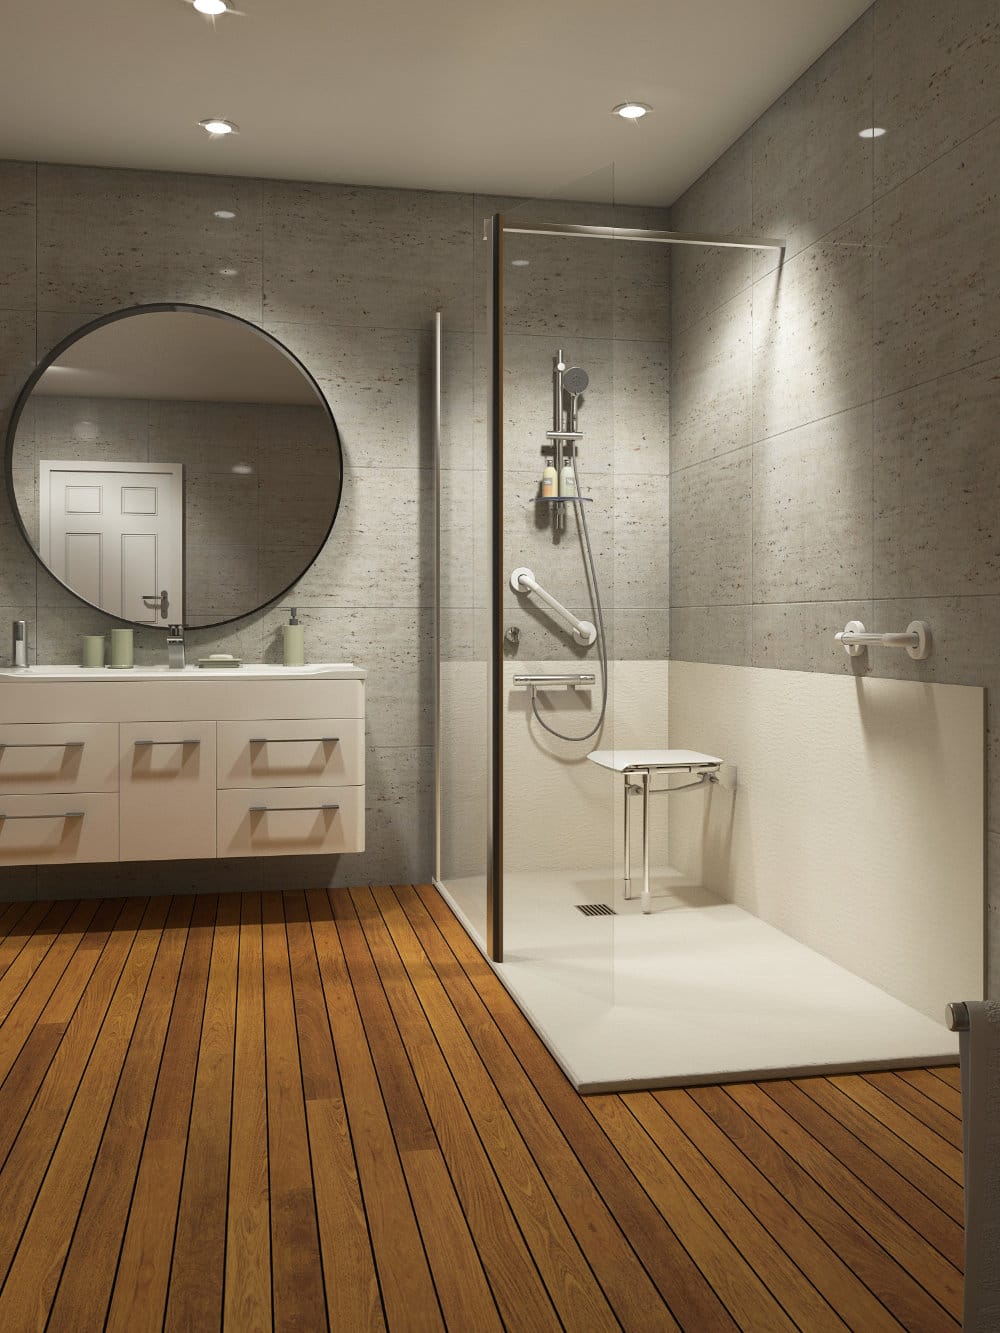 Salle de bain moderne blanche et bois équipée d'une douche sécurisée France Bain